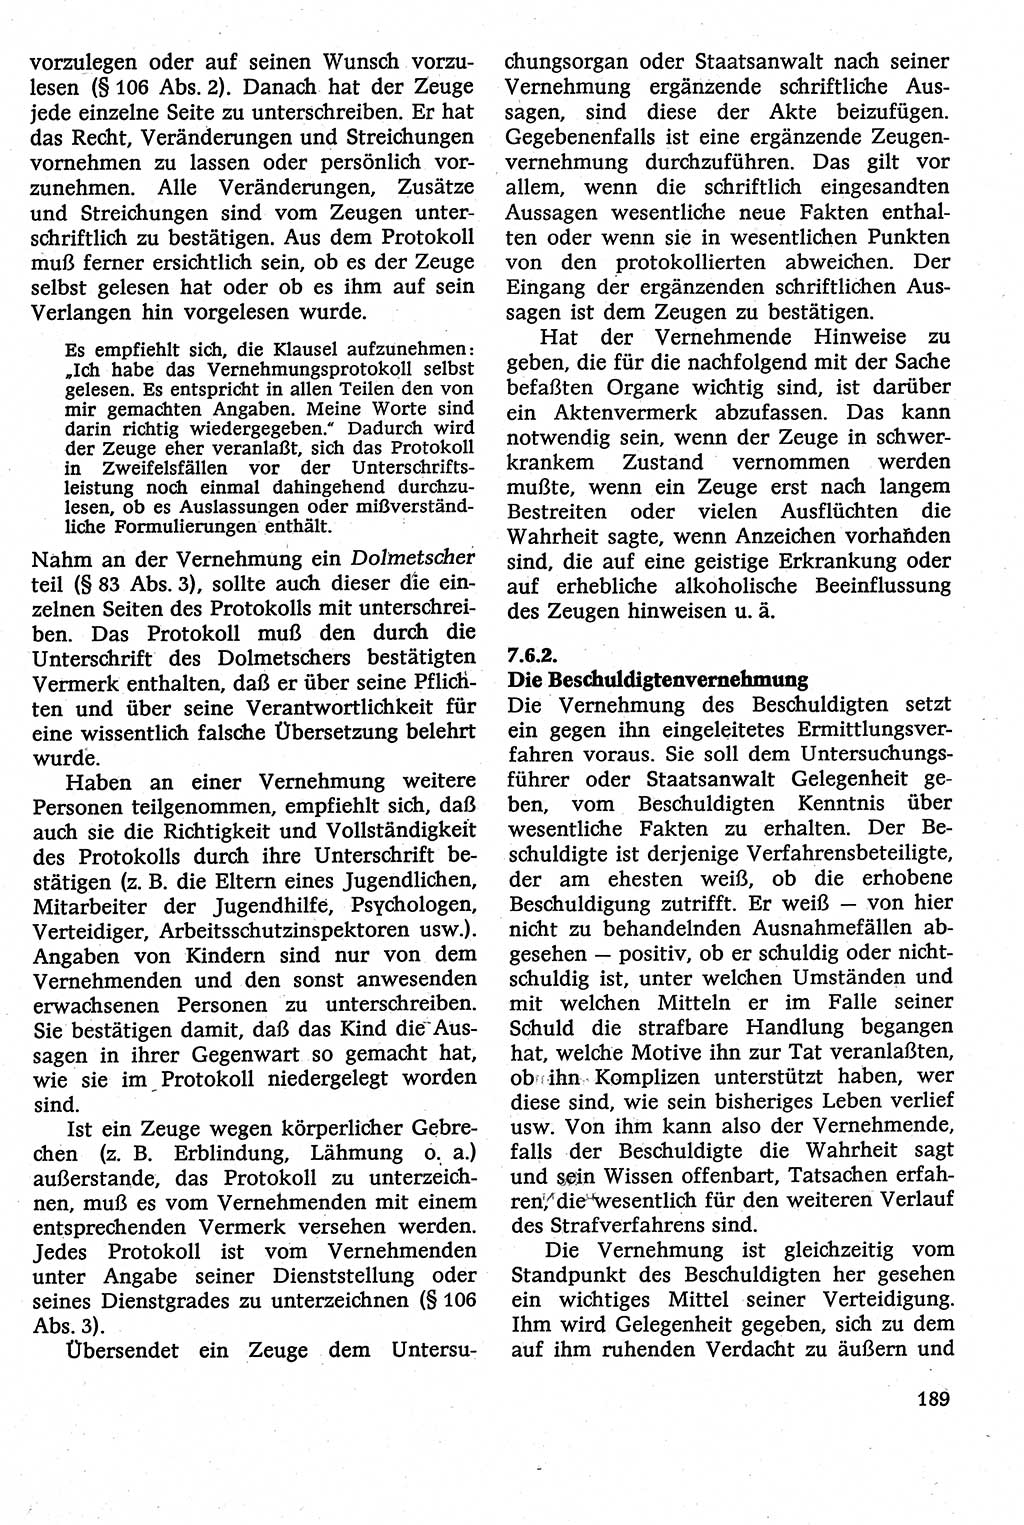 Strafverfahrensrecht [Deutsche Demokratische Republik (DDR)], Lehrbuch 1982, Seite 189 (Strafverf.-R. DDR Lb. 1982, S. 189)